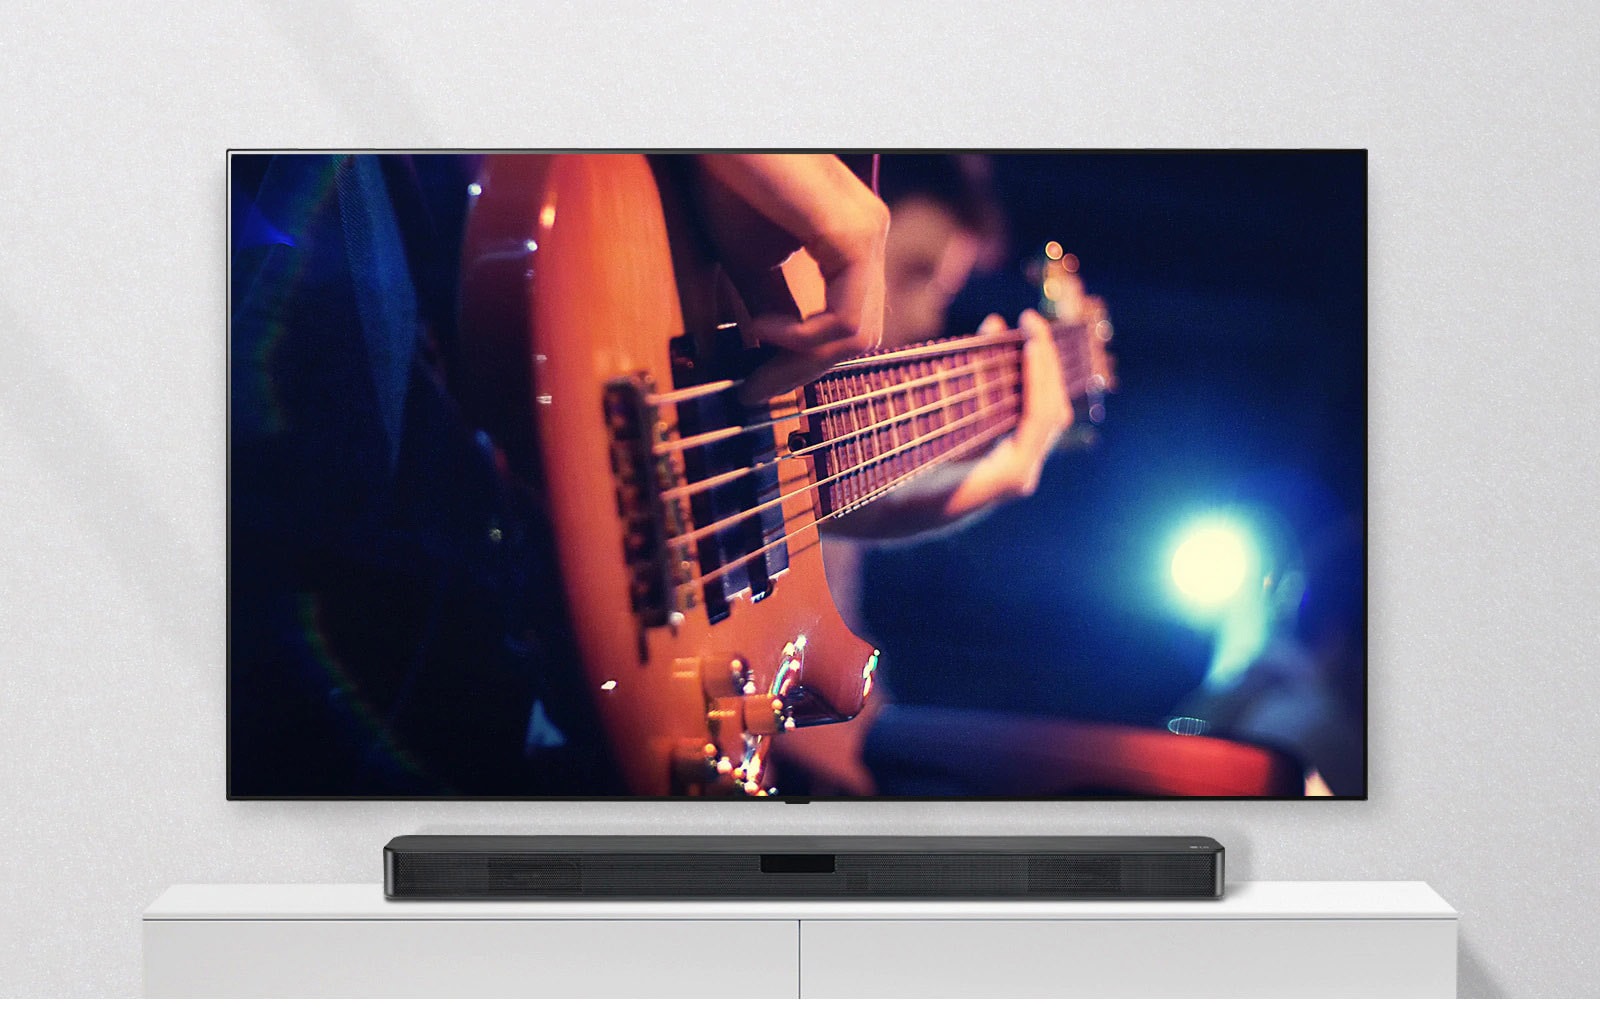 Televisio on kiinnitetty seinään, ja soundbar-kaiutin on valkoisessa hyllyssä. Televisiossa näkyy mies, joka soittaa kitaraa.